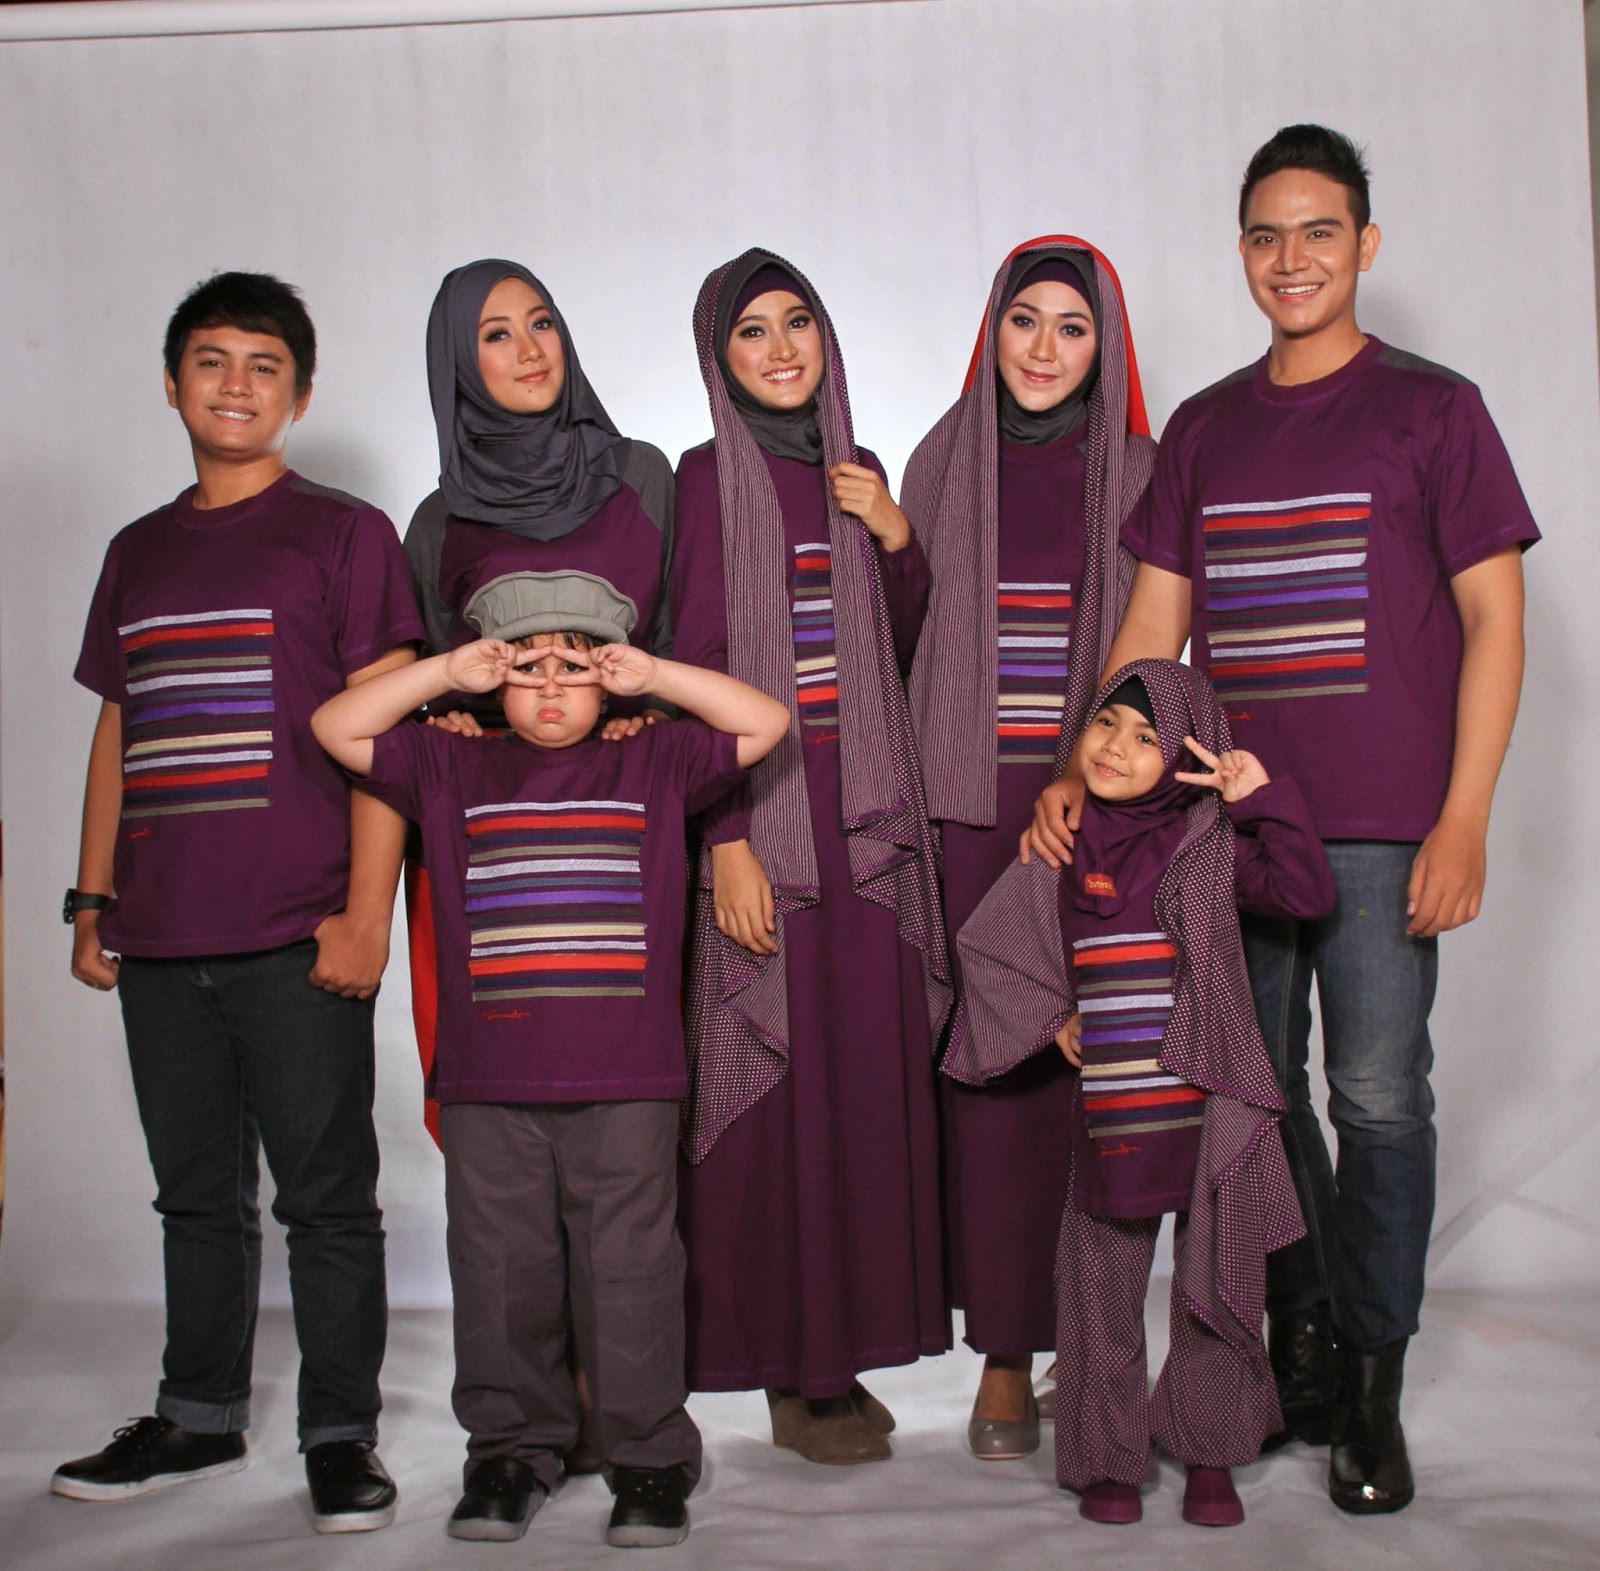 Bentuk Baju Lebaran Keluarga Terbaru Etdg Model Baju Keluarga Untuk Hari Raya Lebaran 2018